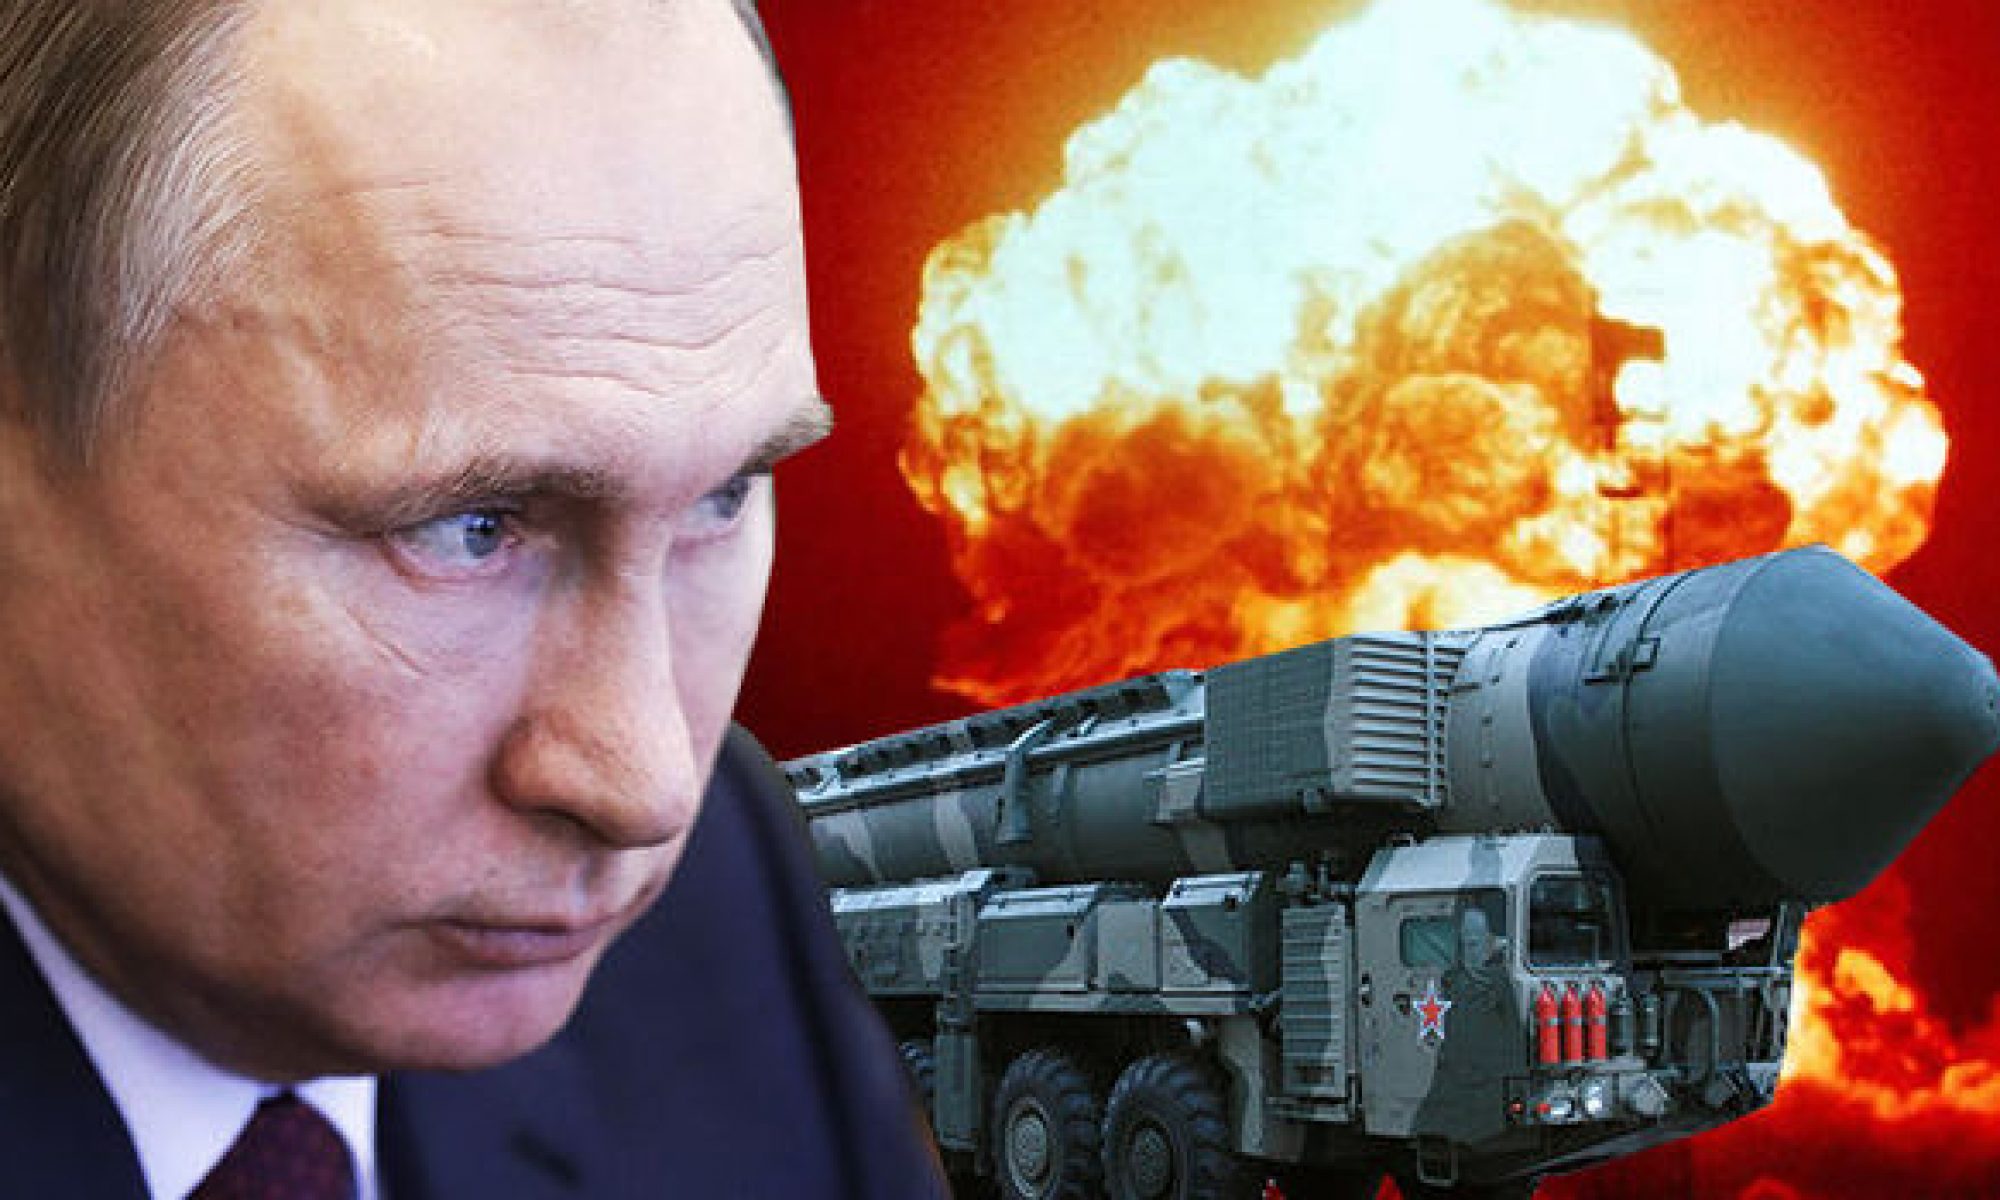 Байден: Путин не шутит, когда угрожает применением ядерного оружия, мир стоит на пороге Армагеддона